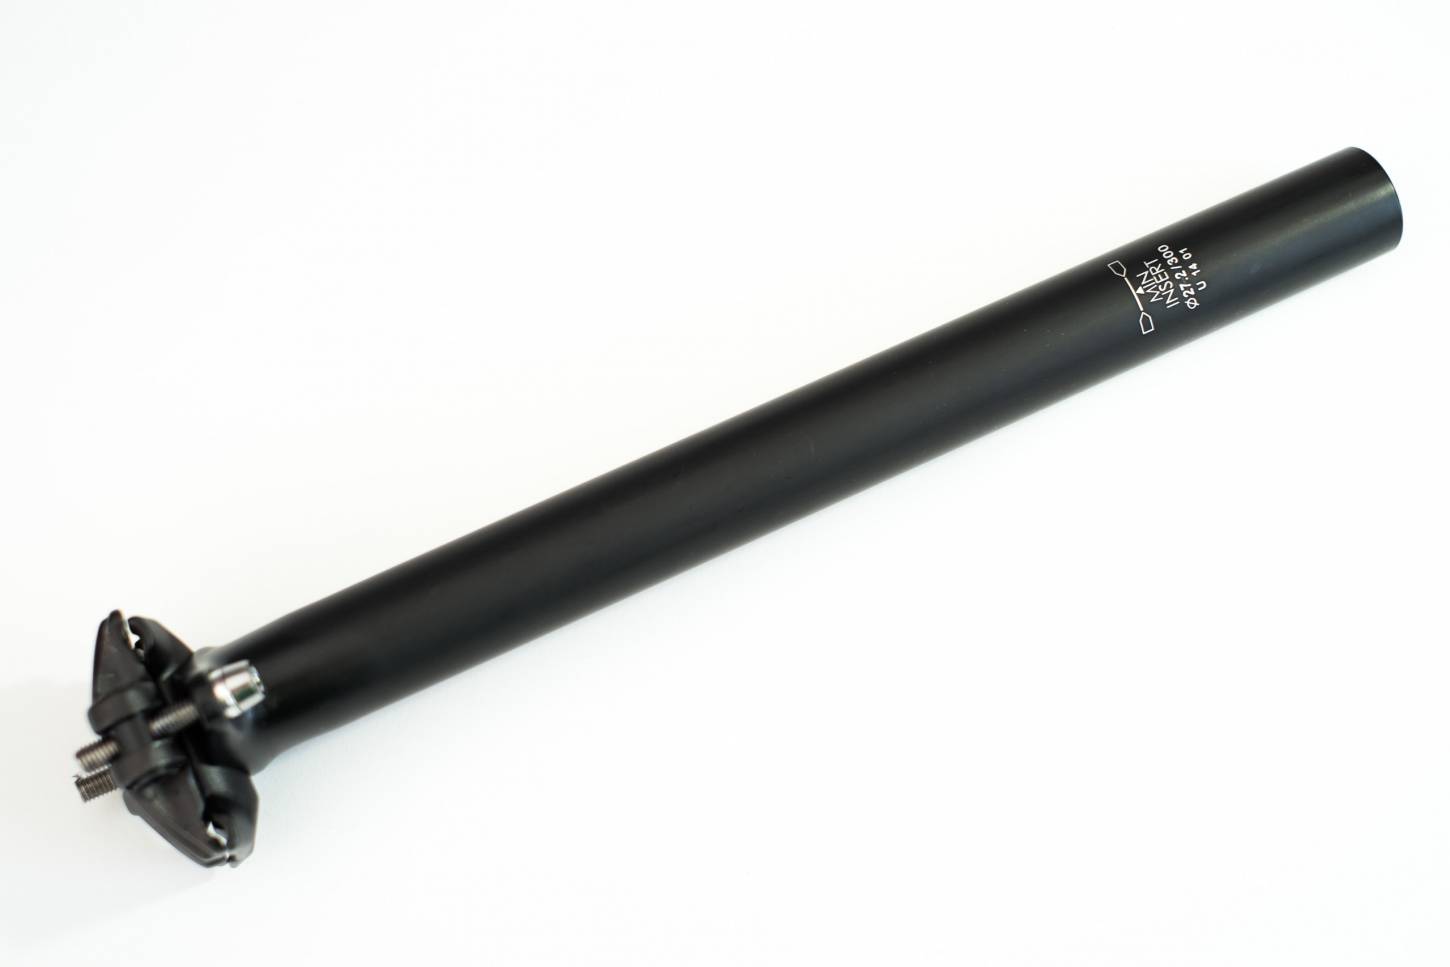 Tija de sillín Edel patentada "Schindelhauer" negra 27,2 mm "Two Bolt" de montaje